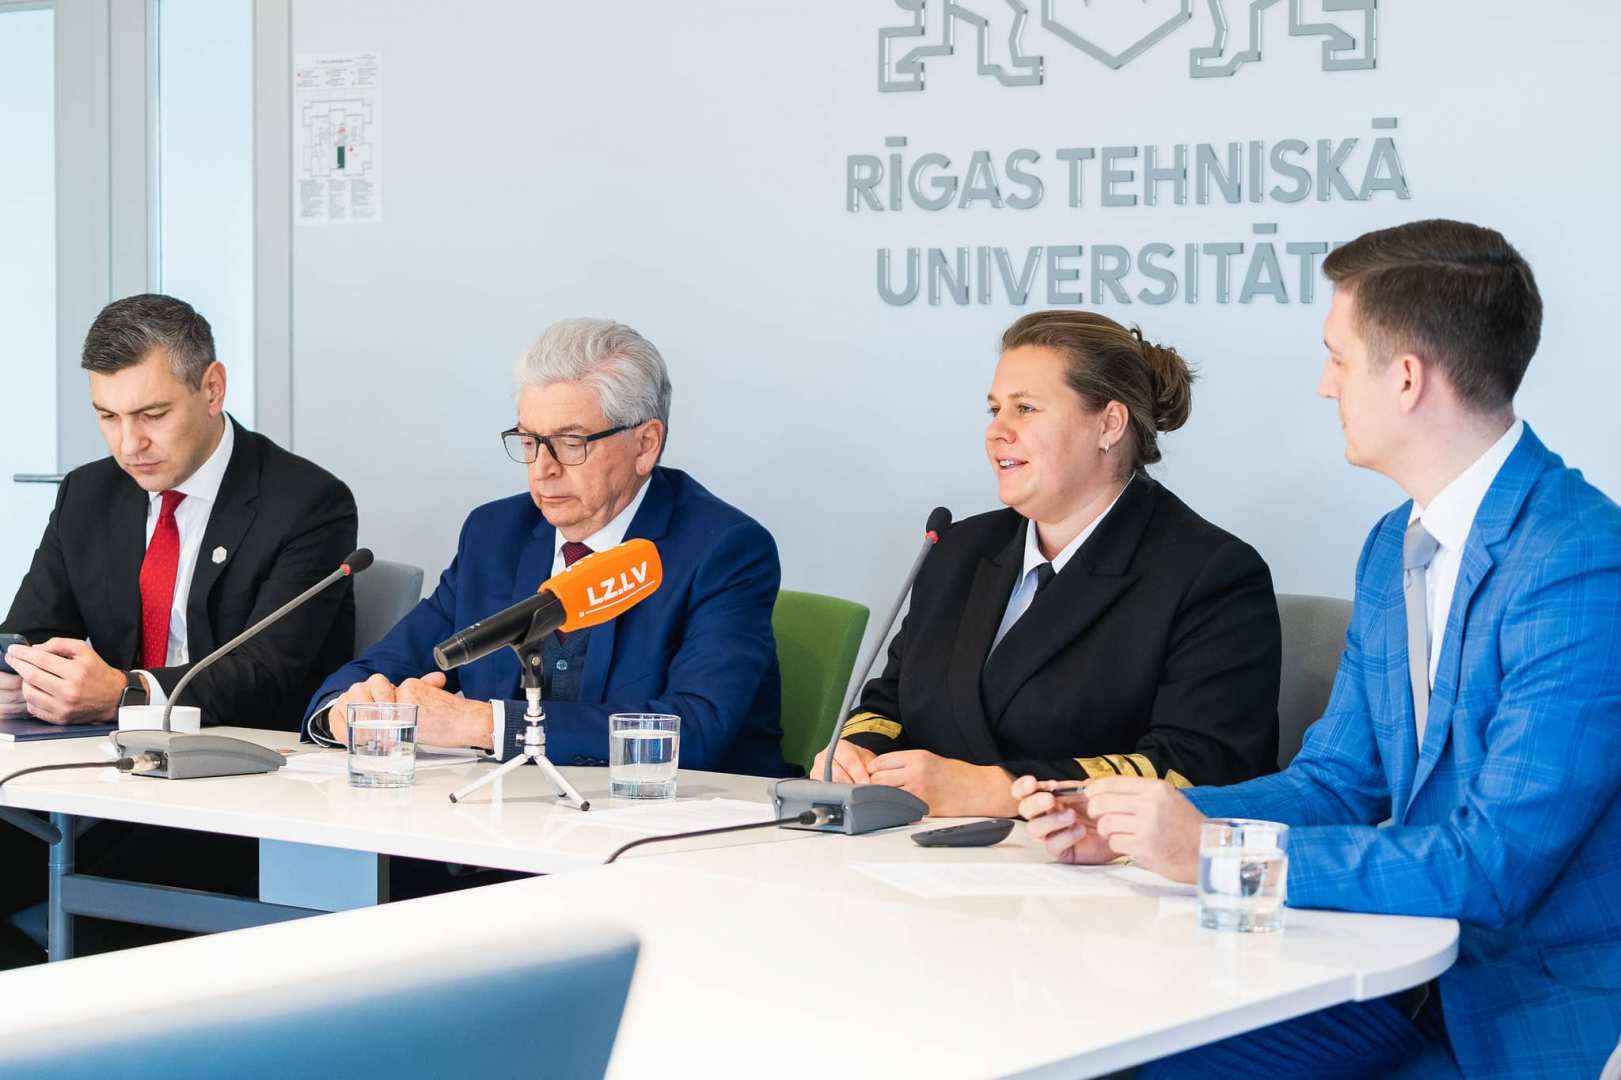 Latvijas Jūras akadēmijai, pievienojoties RTU, būs iespēja stiprināt studijas un zinātni un attīstīt infrastruktūru